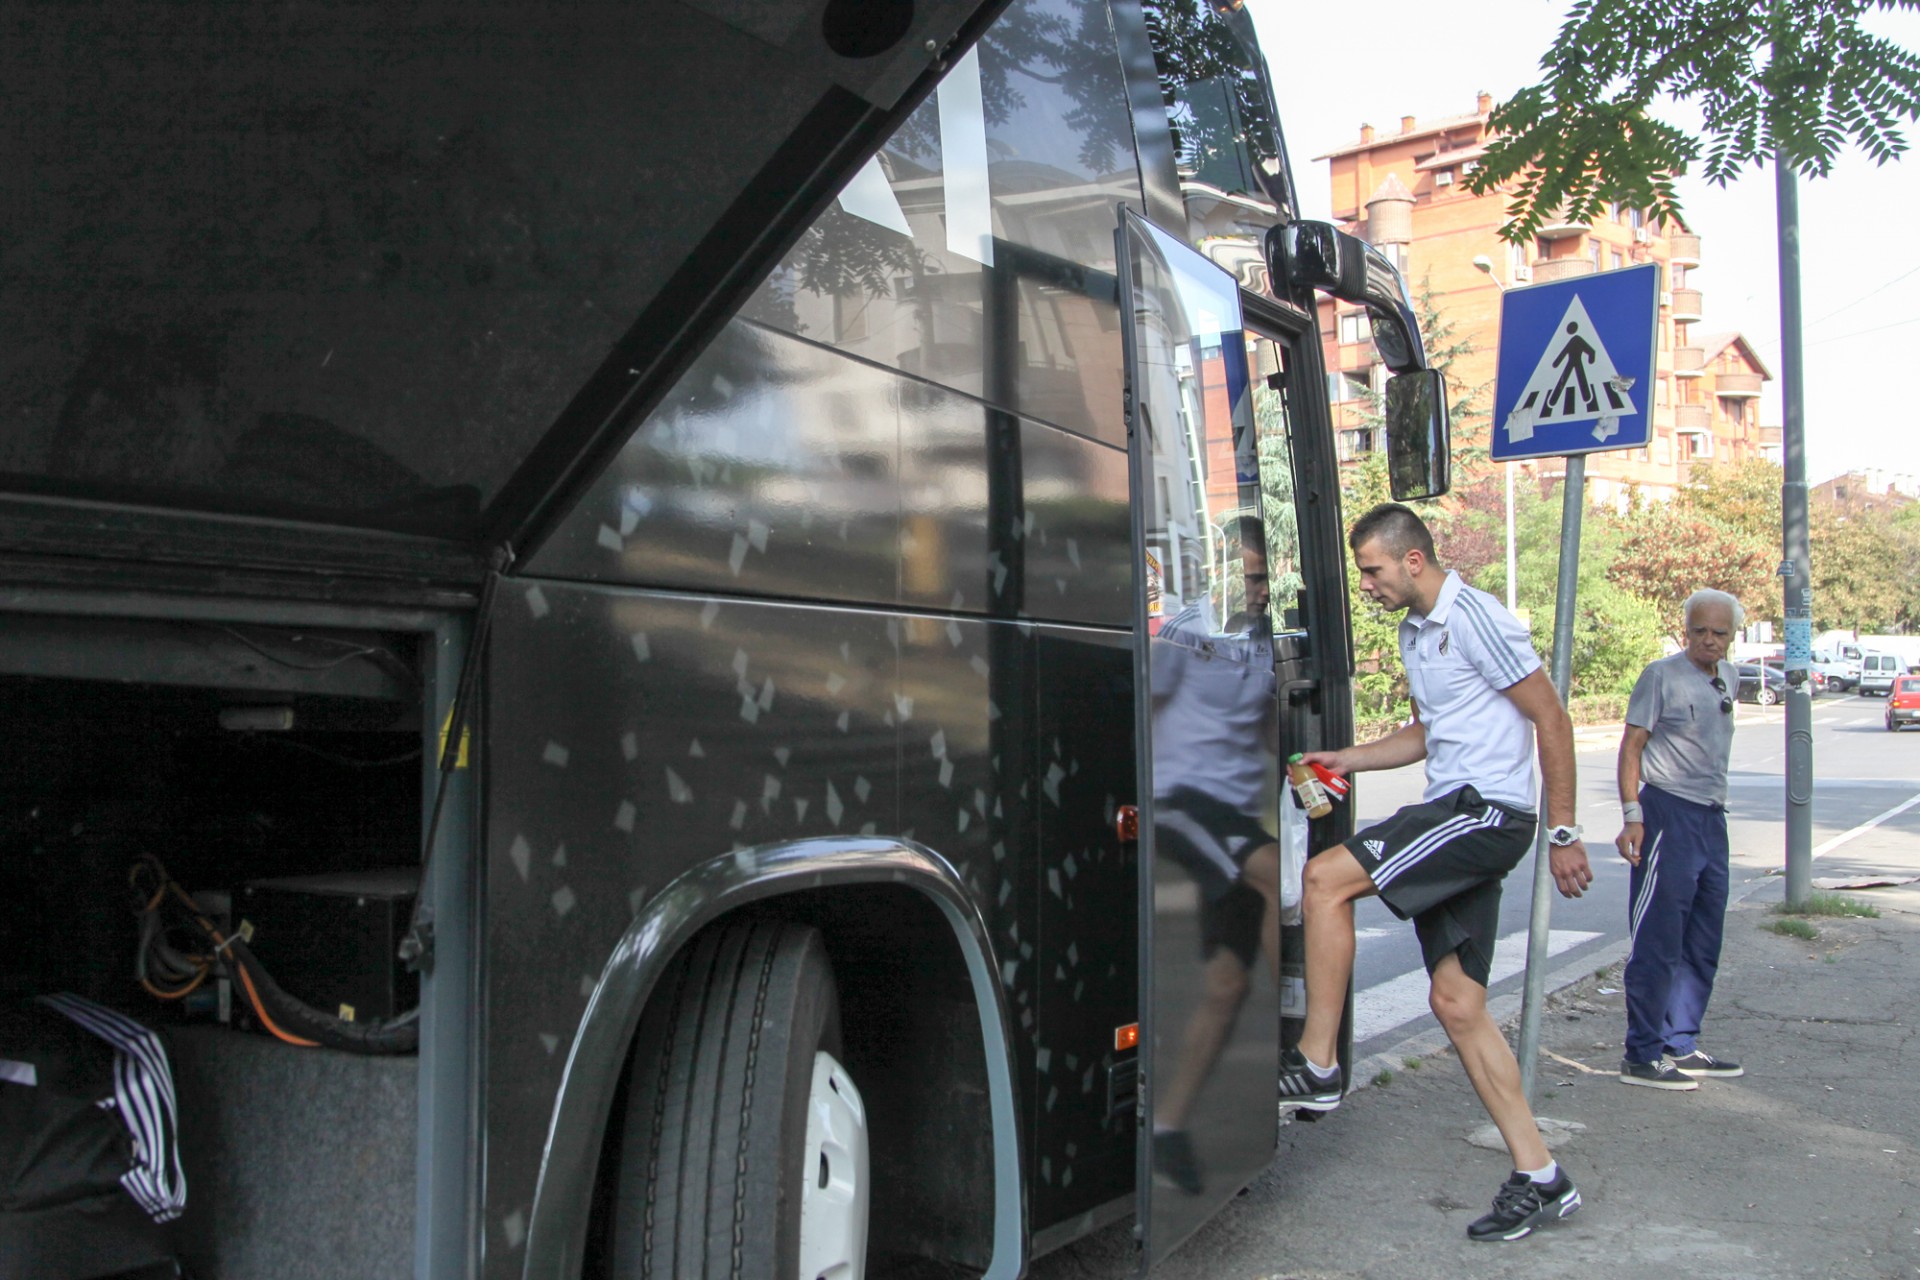 Crnomarković ulazi u autobus - Đorđe Crnomarković | FkCukaricki